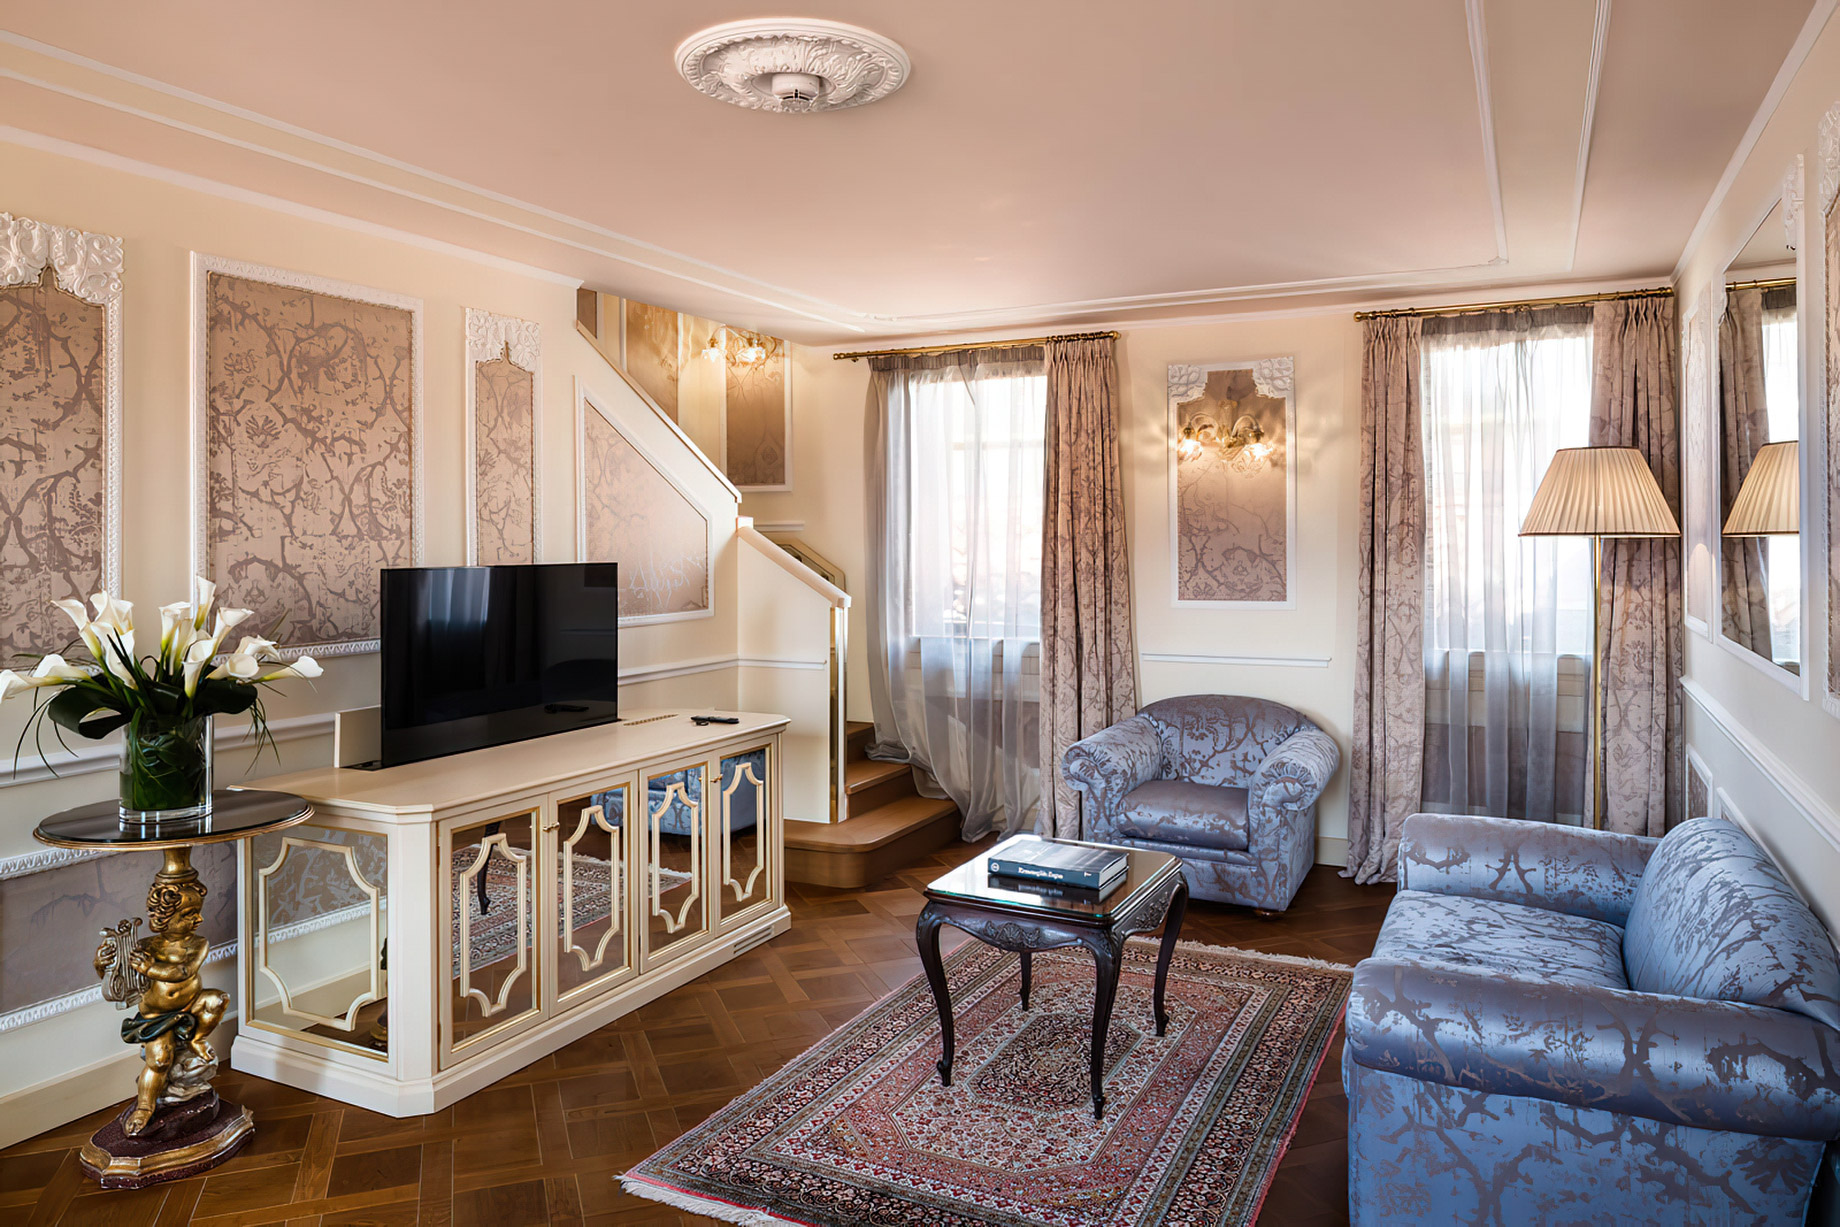 Baglioni Hotel Luna, Venezia – Venice, Italy – Giorgione Terrace Suite